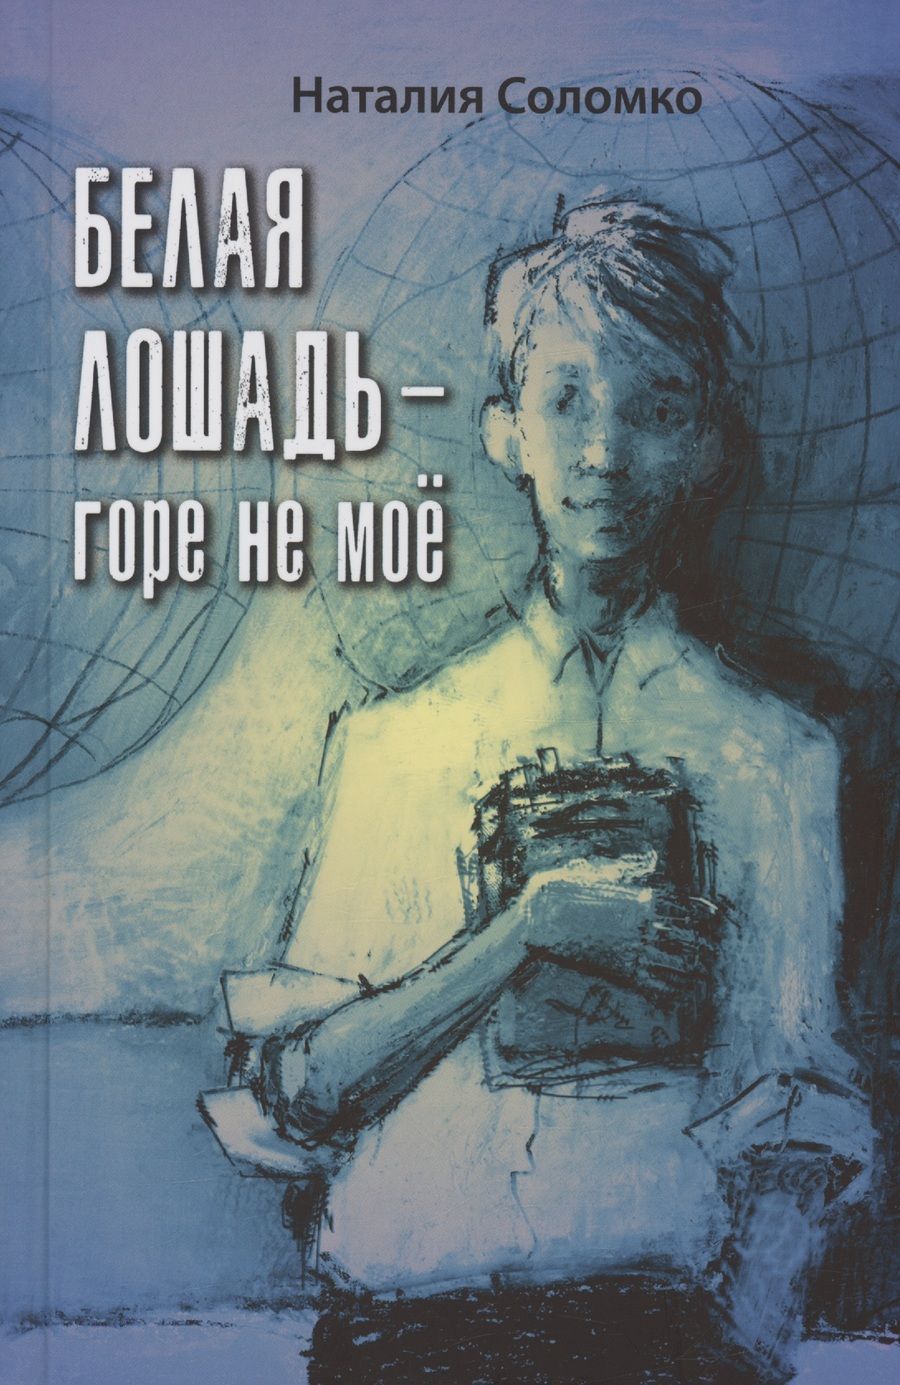 Обложка книги "Соломко: Белая лошадь – горе не моё"